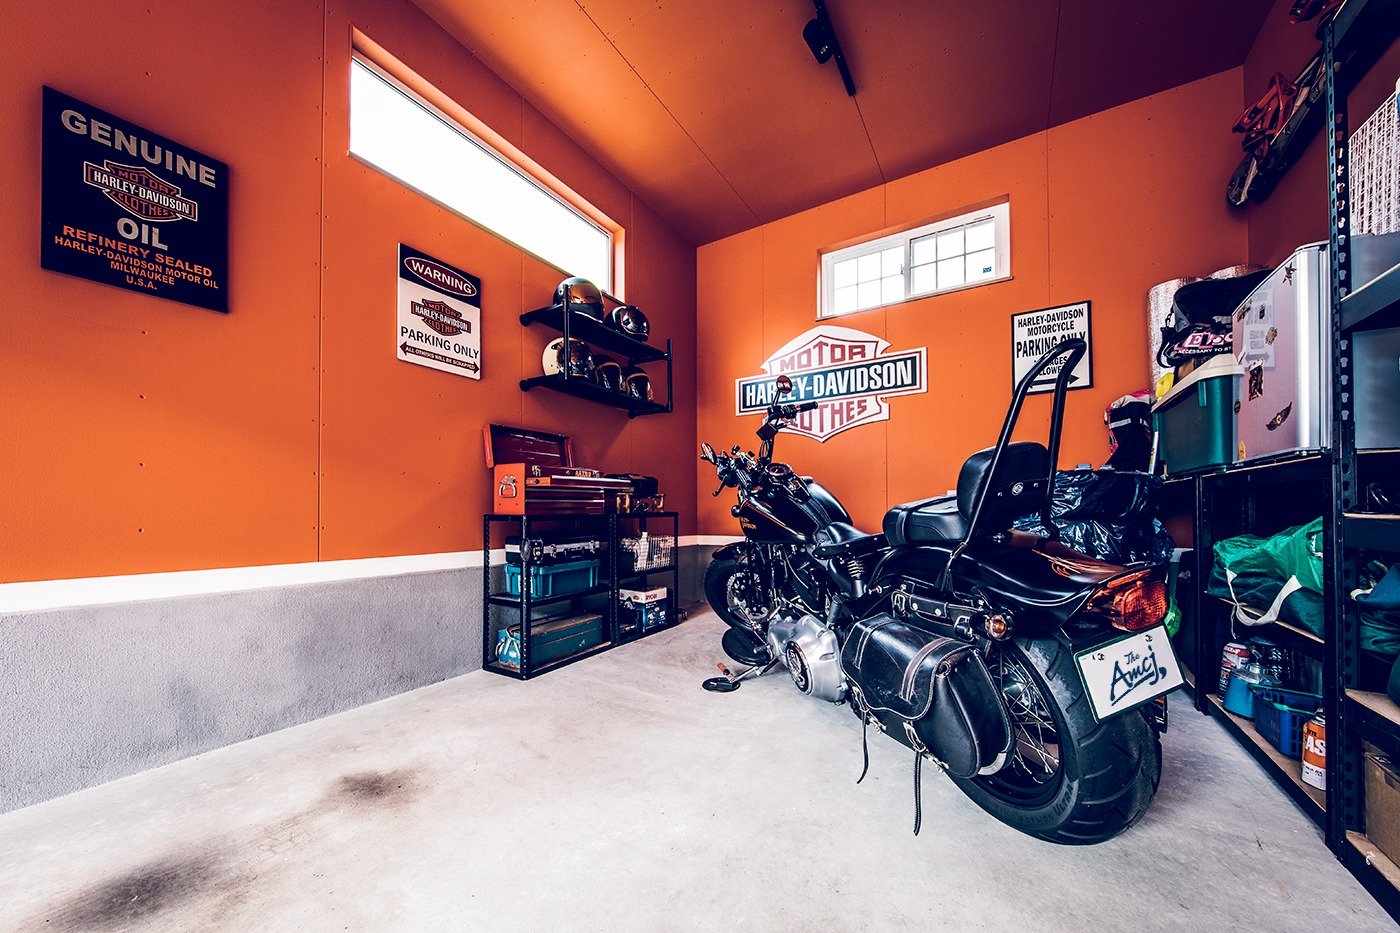 趣味のバイクと共に過ごす ガレージライフを楽しむ Amcj Life オーナーインタビュー アメカジ工務店